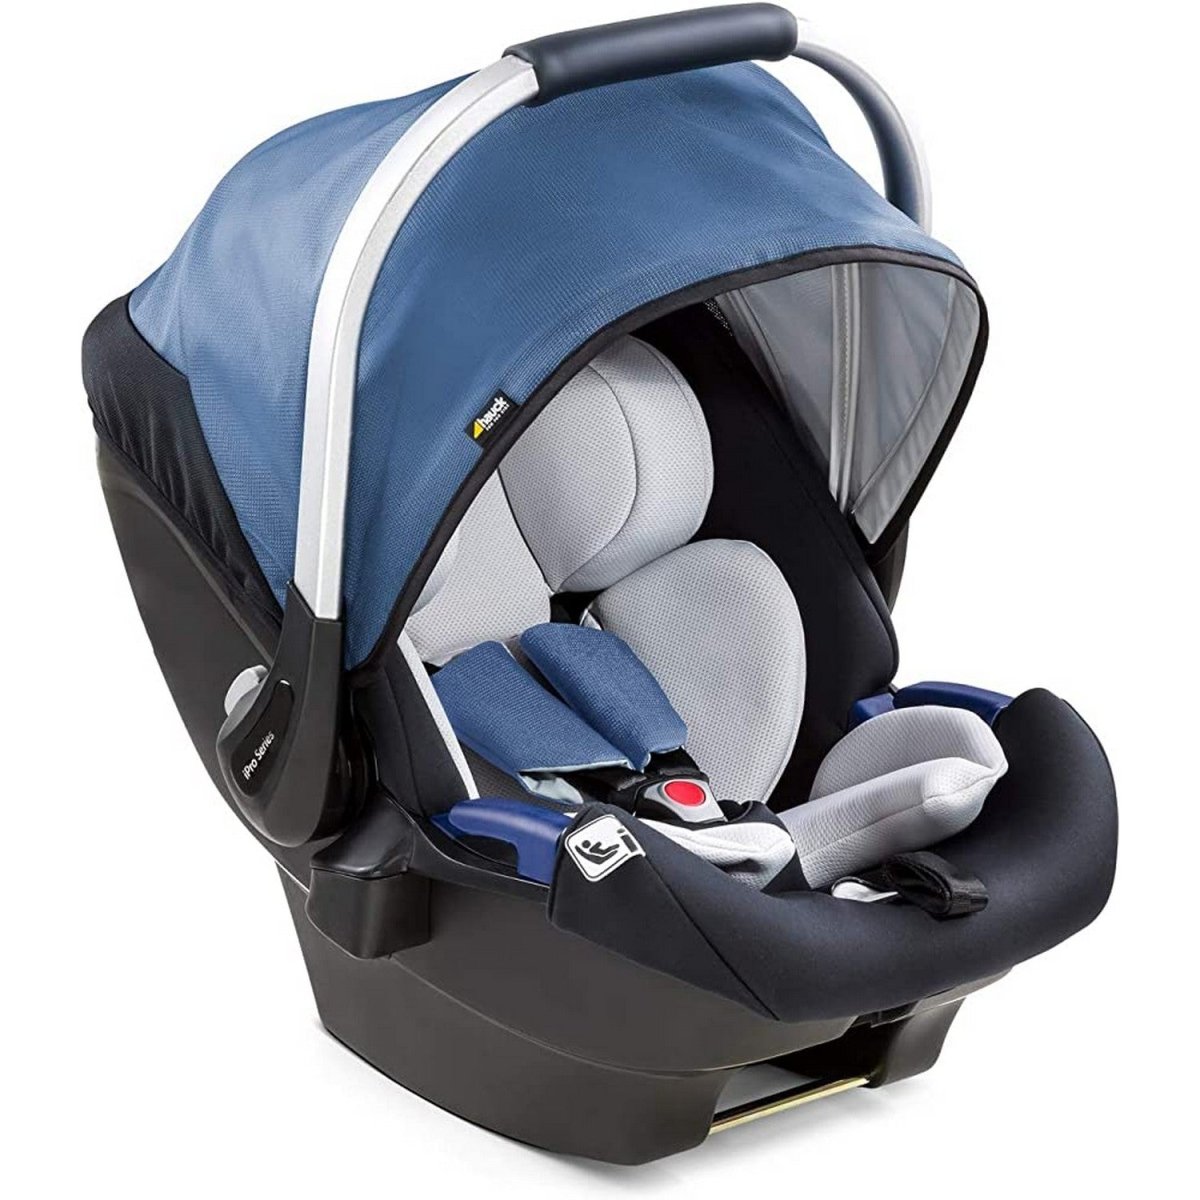 Hauck Ipro Baby Travel & Gear- Denim - 614143